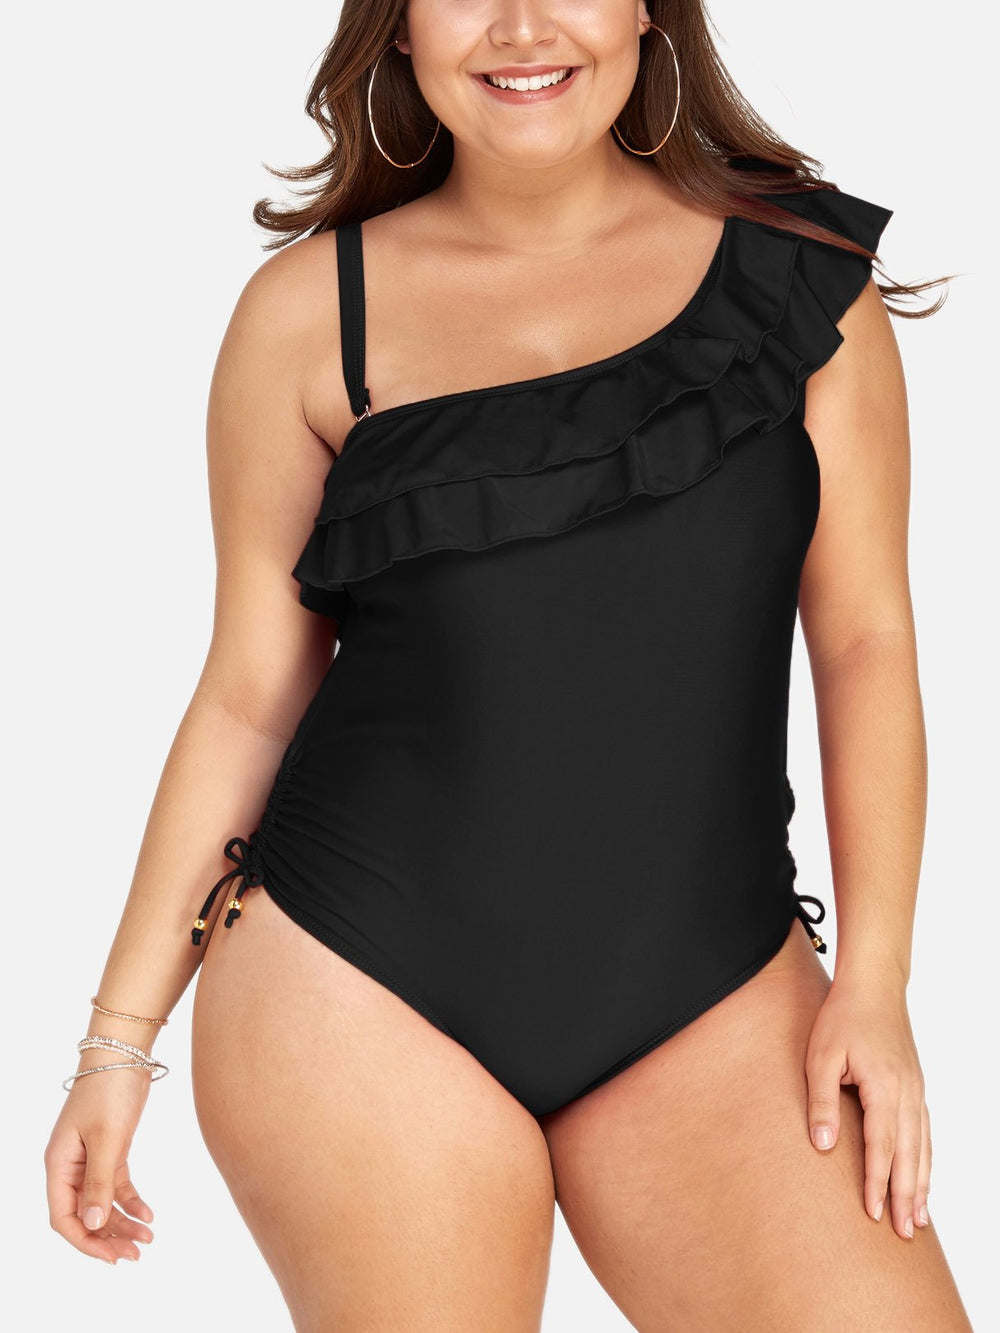 Women's Plus Size Swimwear Bathing Suit